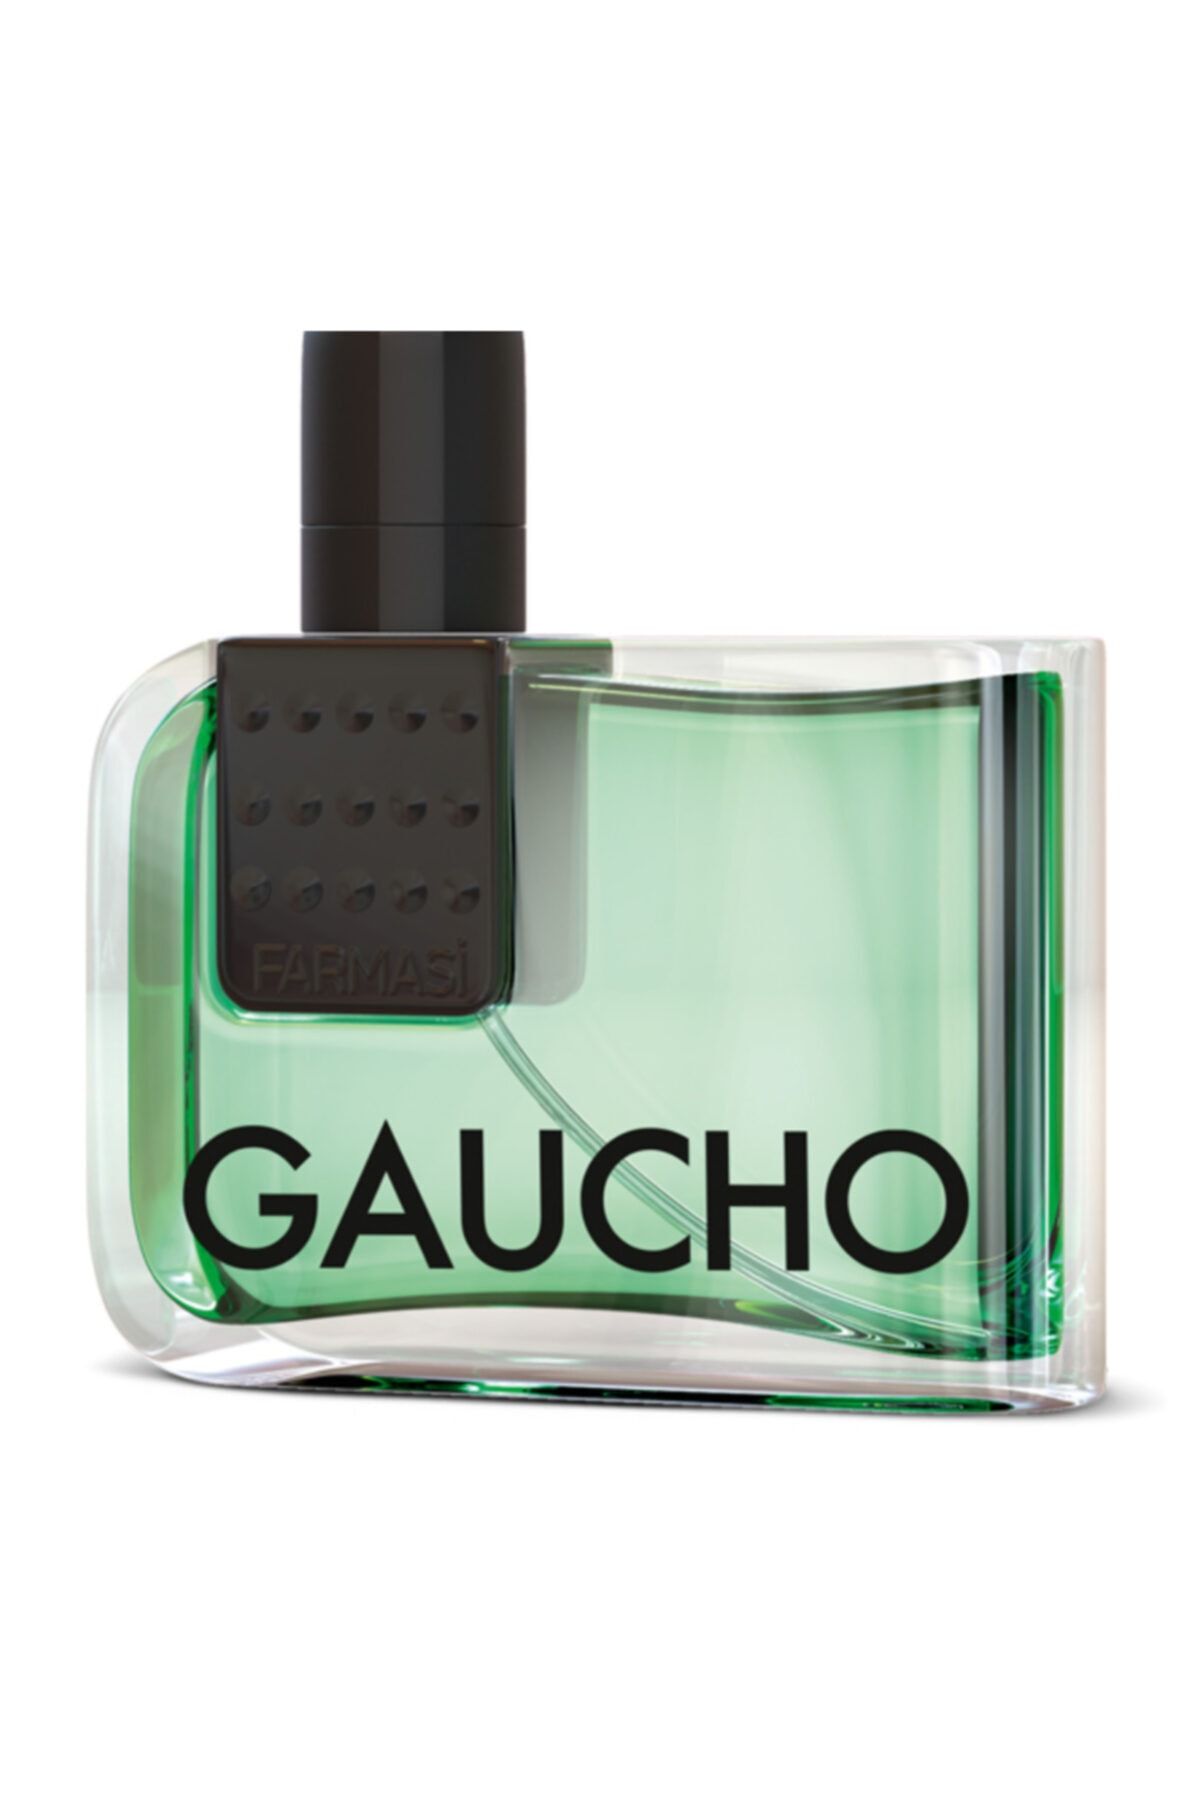 Farmasi Gaucho Edp 100 ml Erkek Parfümü + Gaucho Tıraş Sonrası Losyonu 58665125525